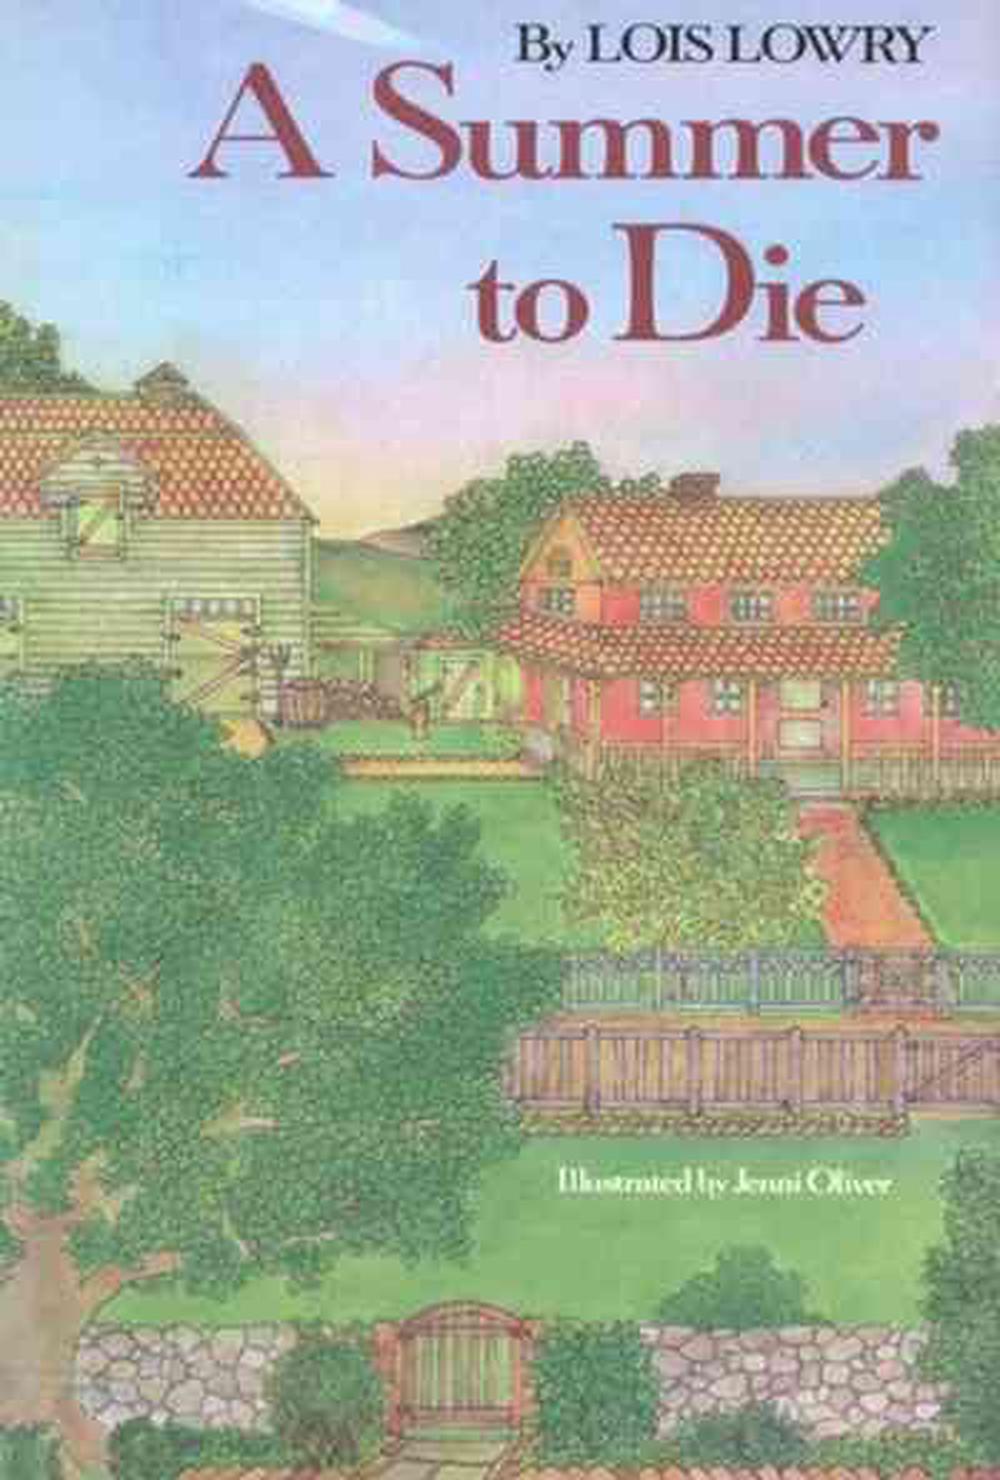 book a summer to die